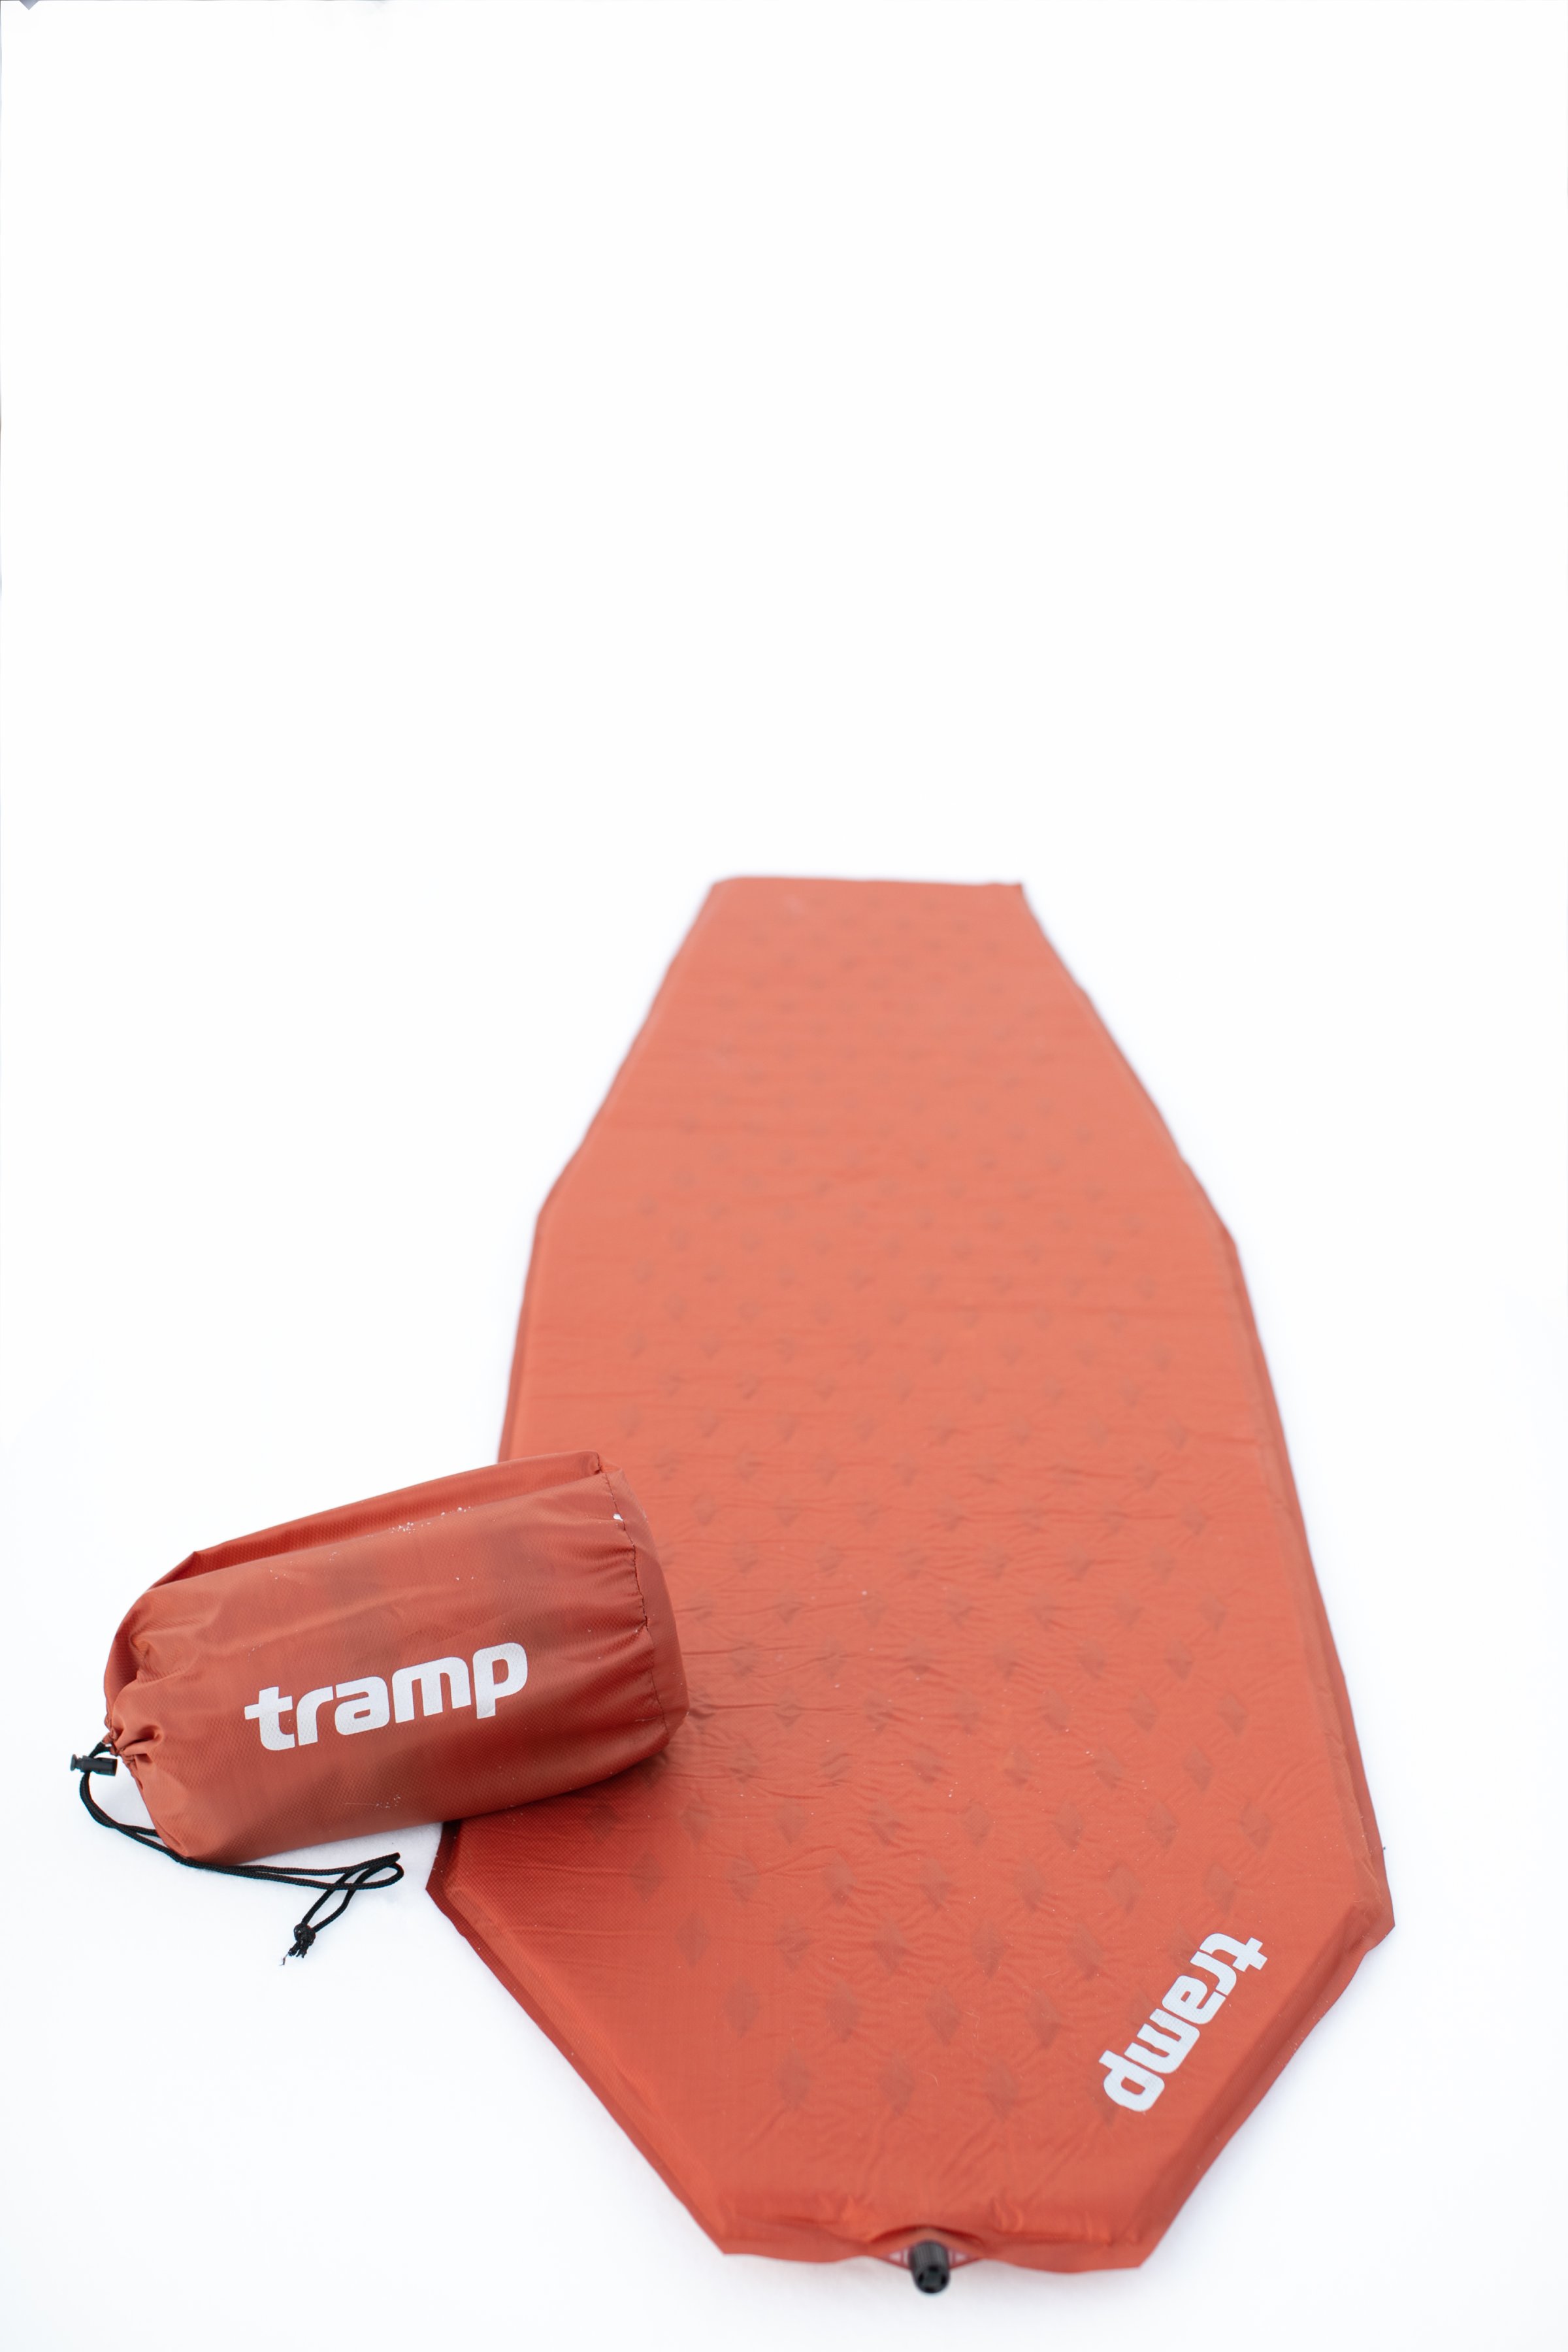   Tramp Ultralight TPU  183512, 5 TRI-022